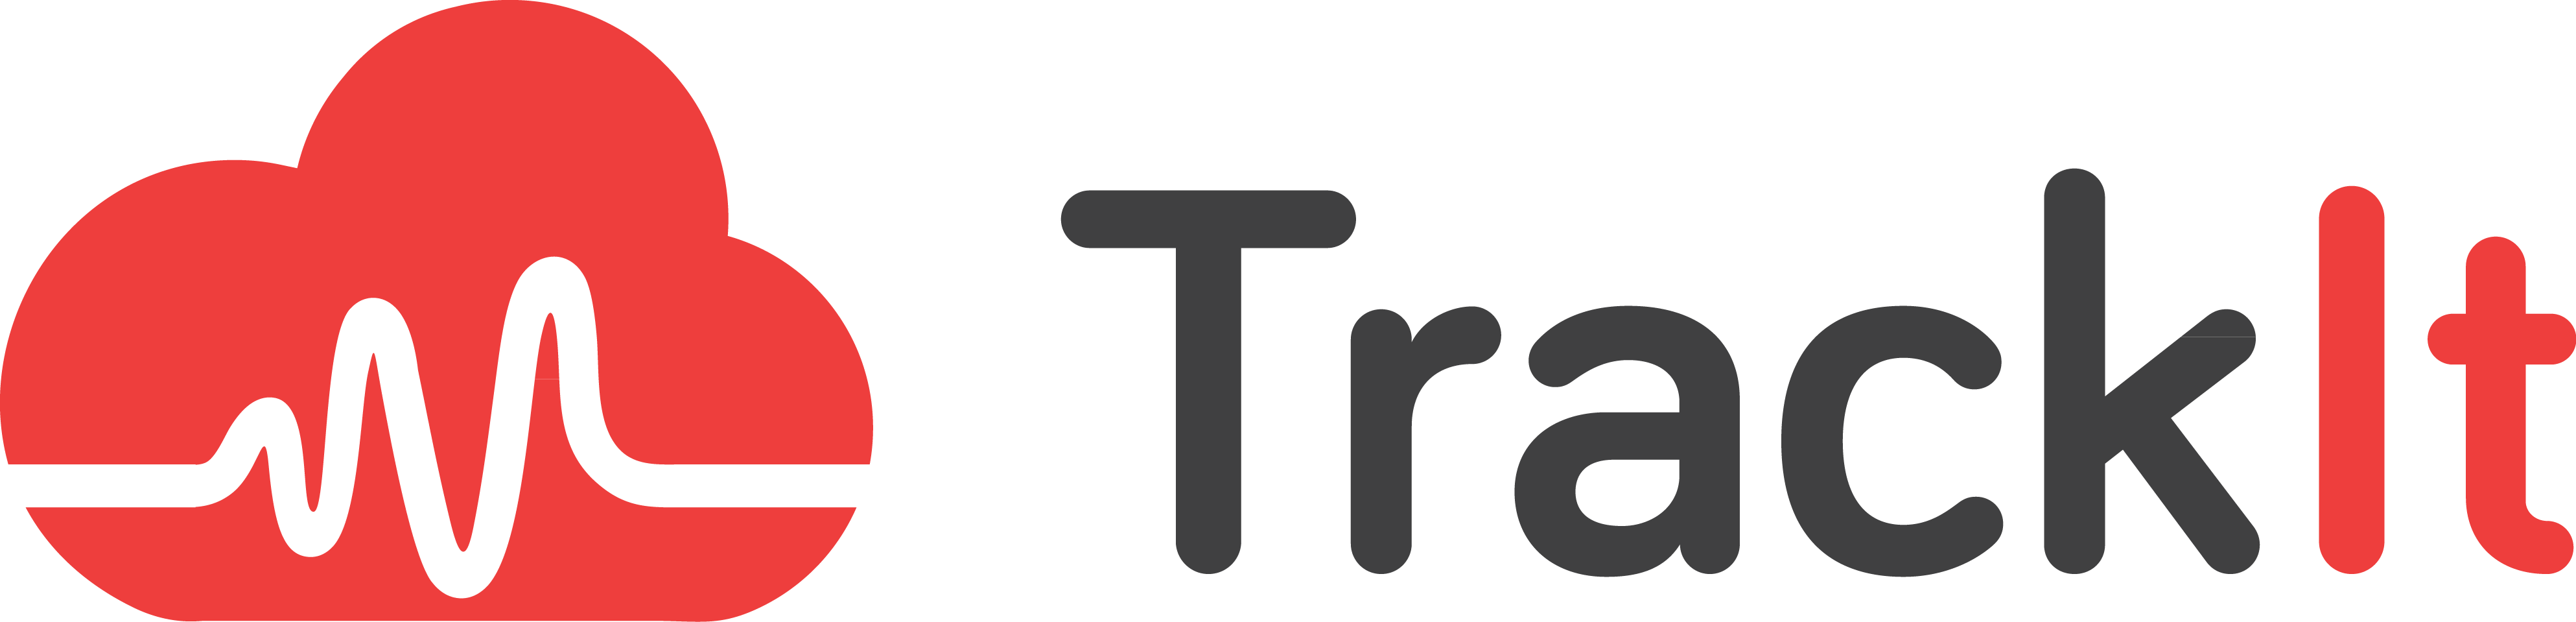 KCET trackit logo